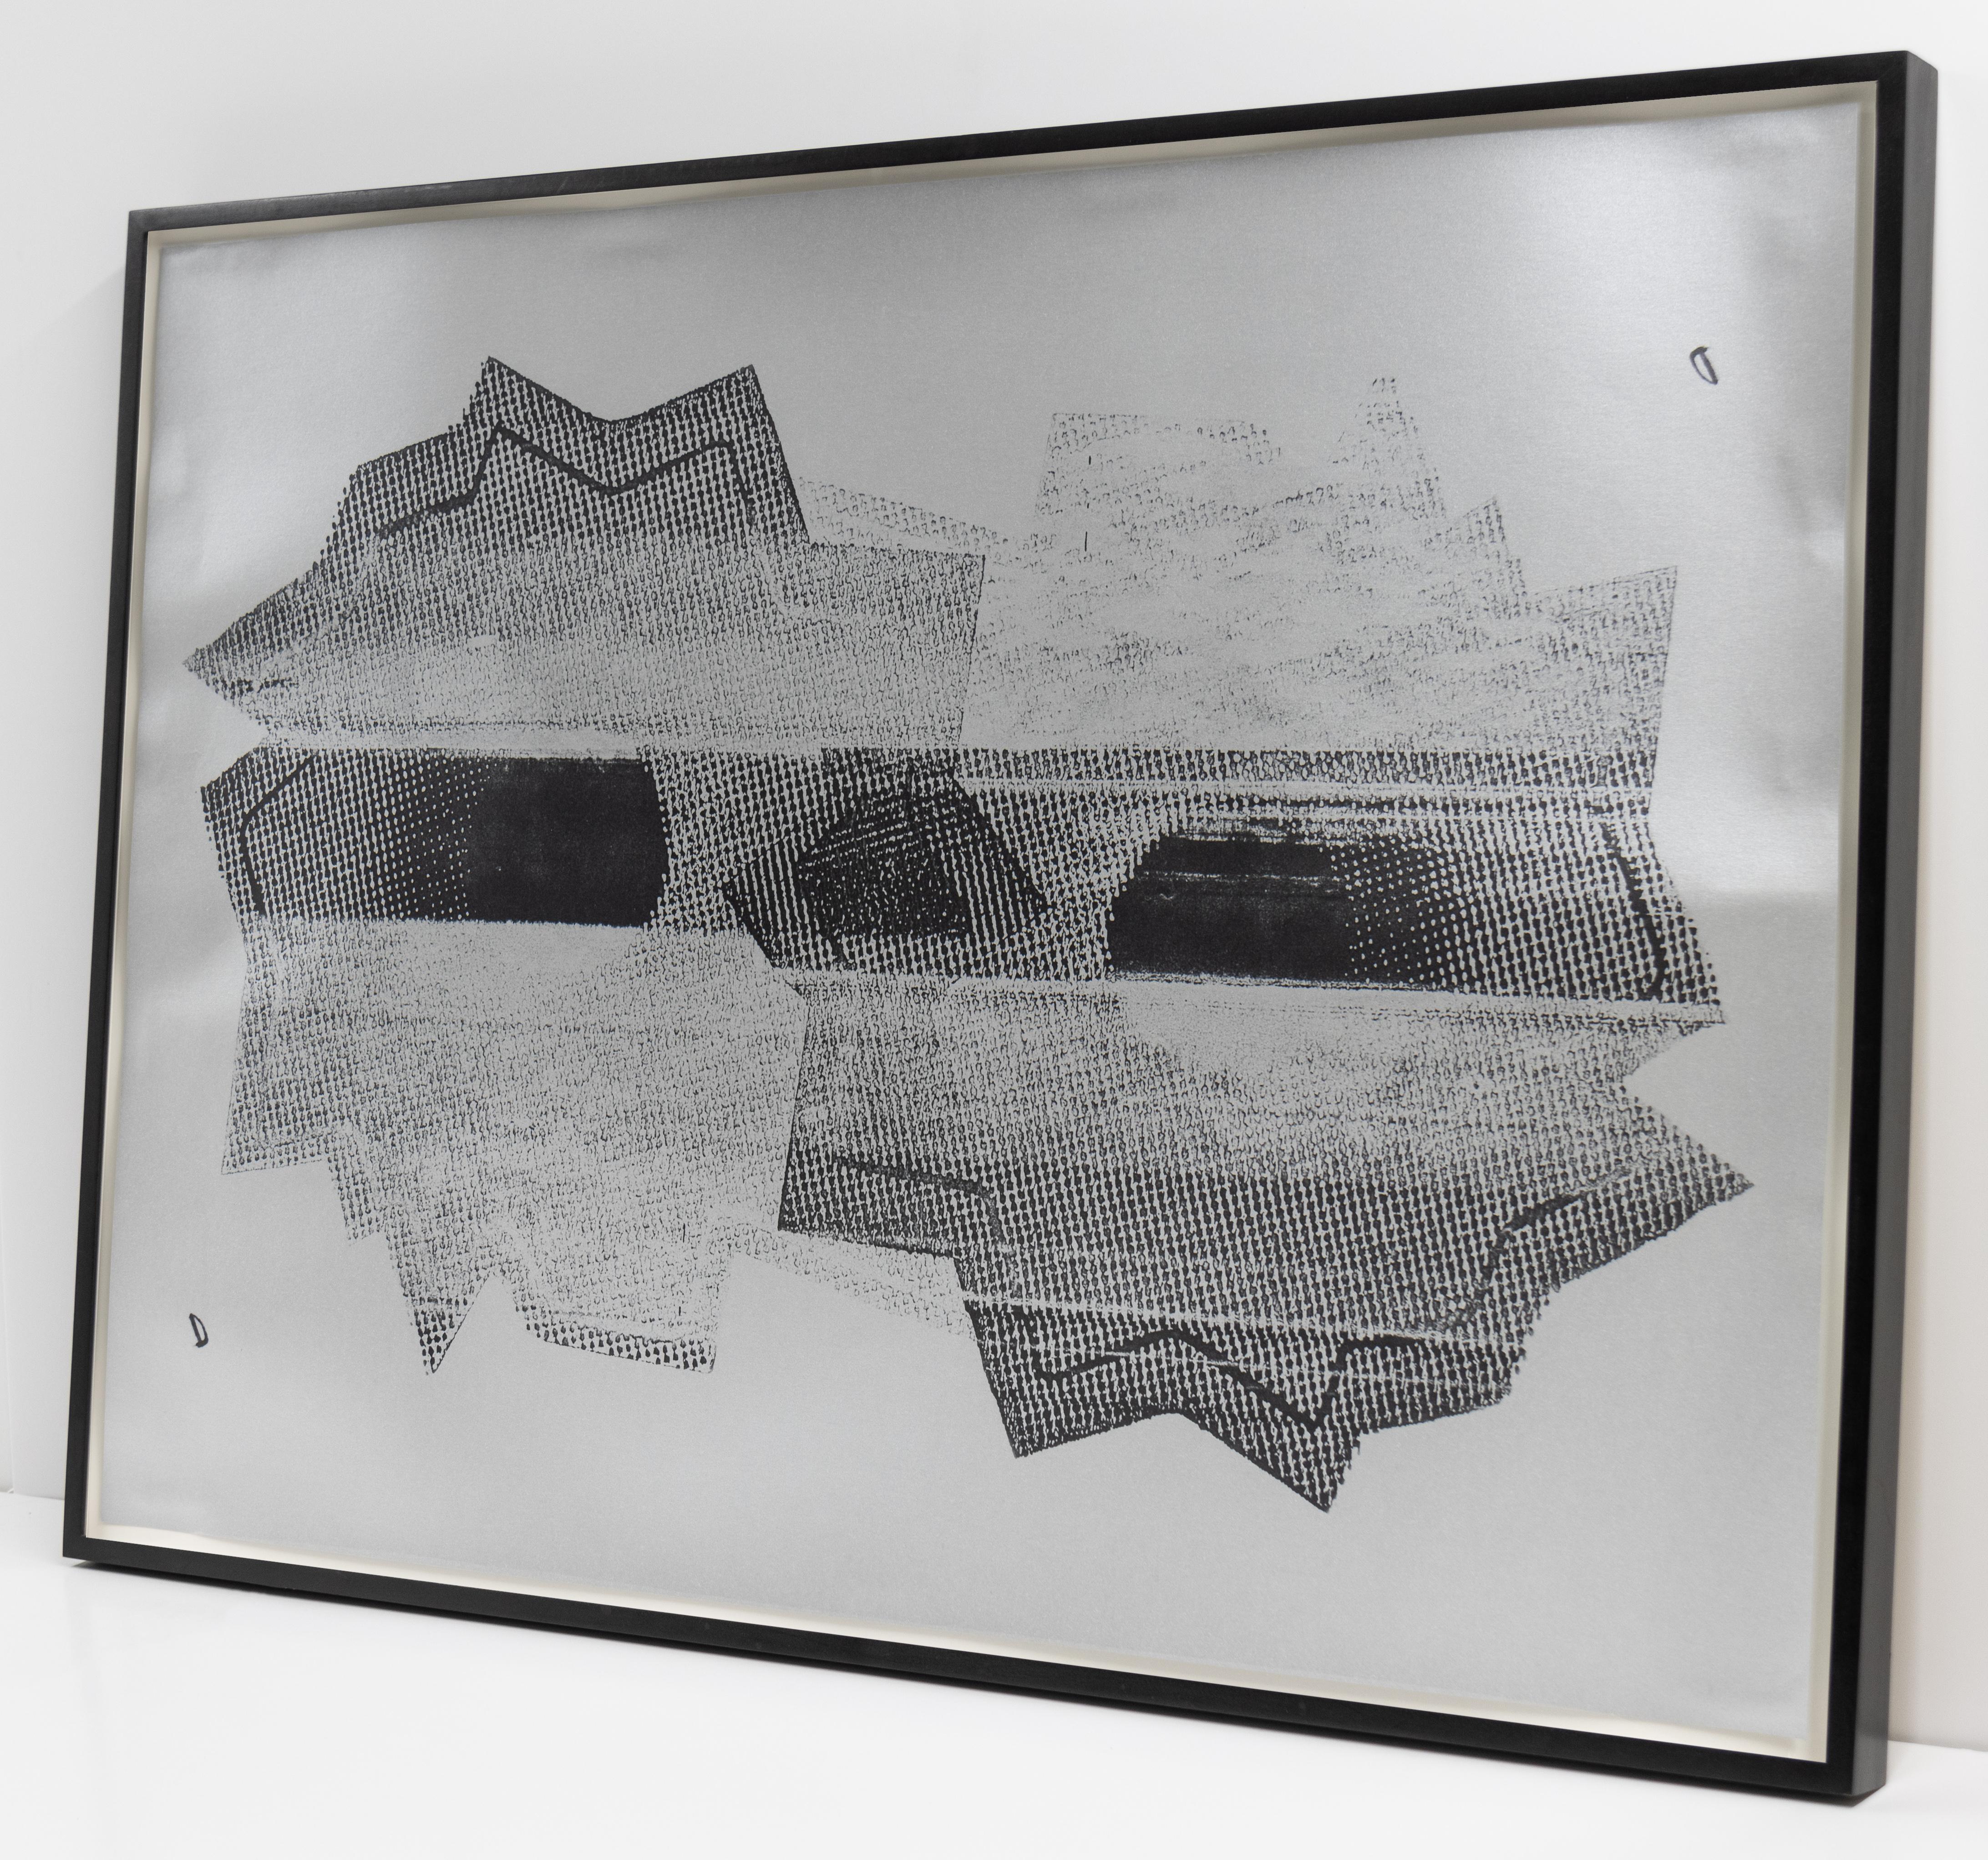 Dies ist ein Siebdruck auf silbernem Metallic-Papier von zwei abstrahierten Einschusslöchern.

Dieses Kunstwerk von Nate Lowman wird von CLAMP in New York City angeboten.